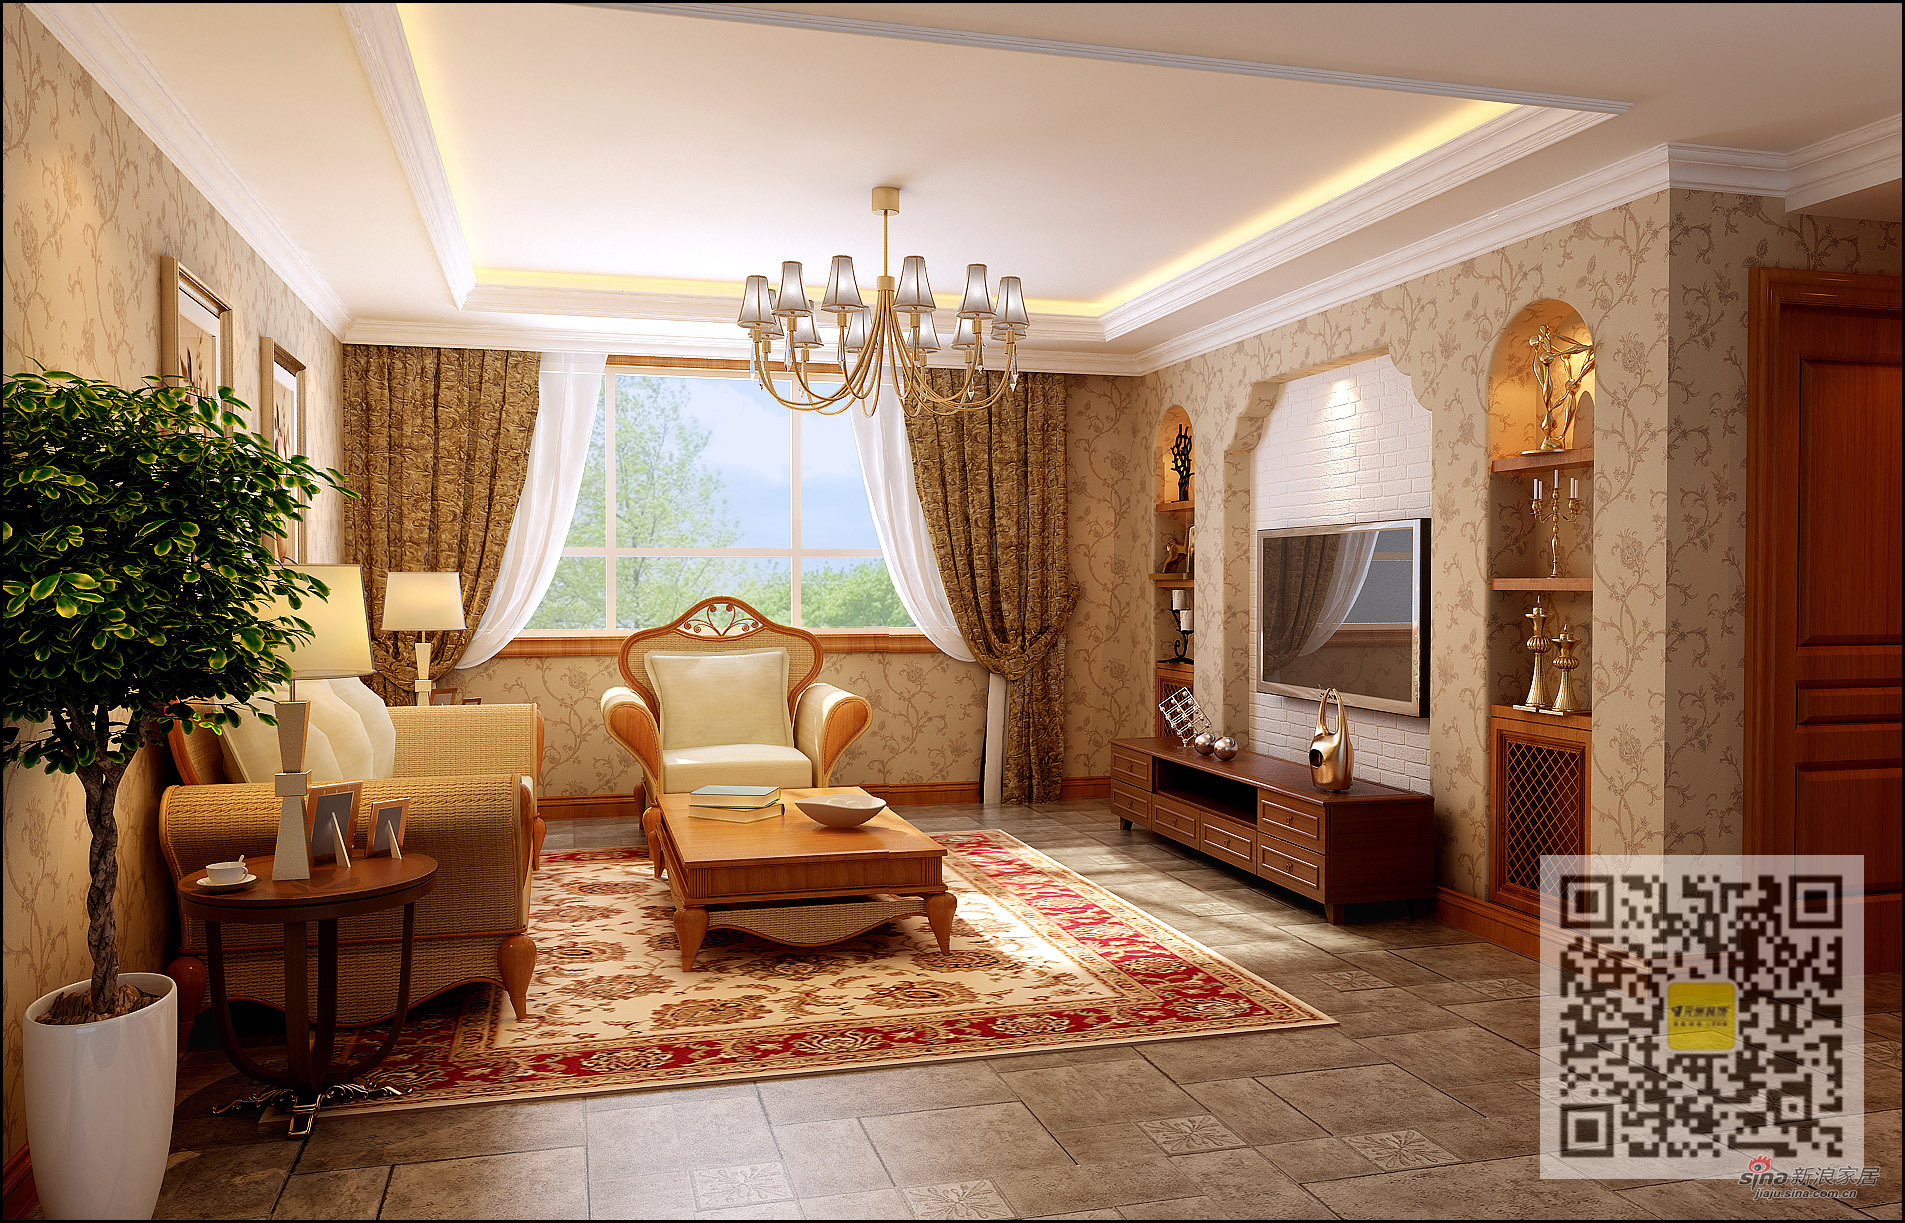 美式 别墅 客厅图片来自用户1907685403在孔雀城美式风格别墅装修设计16的分享